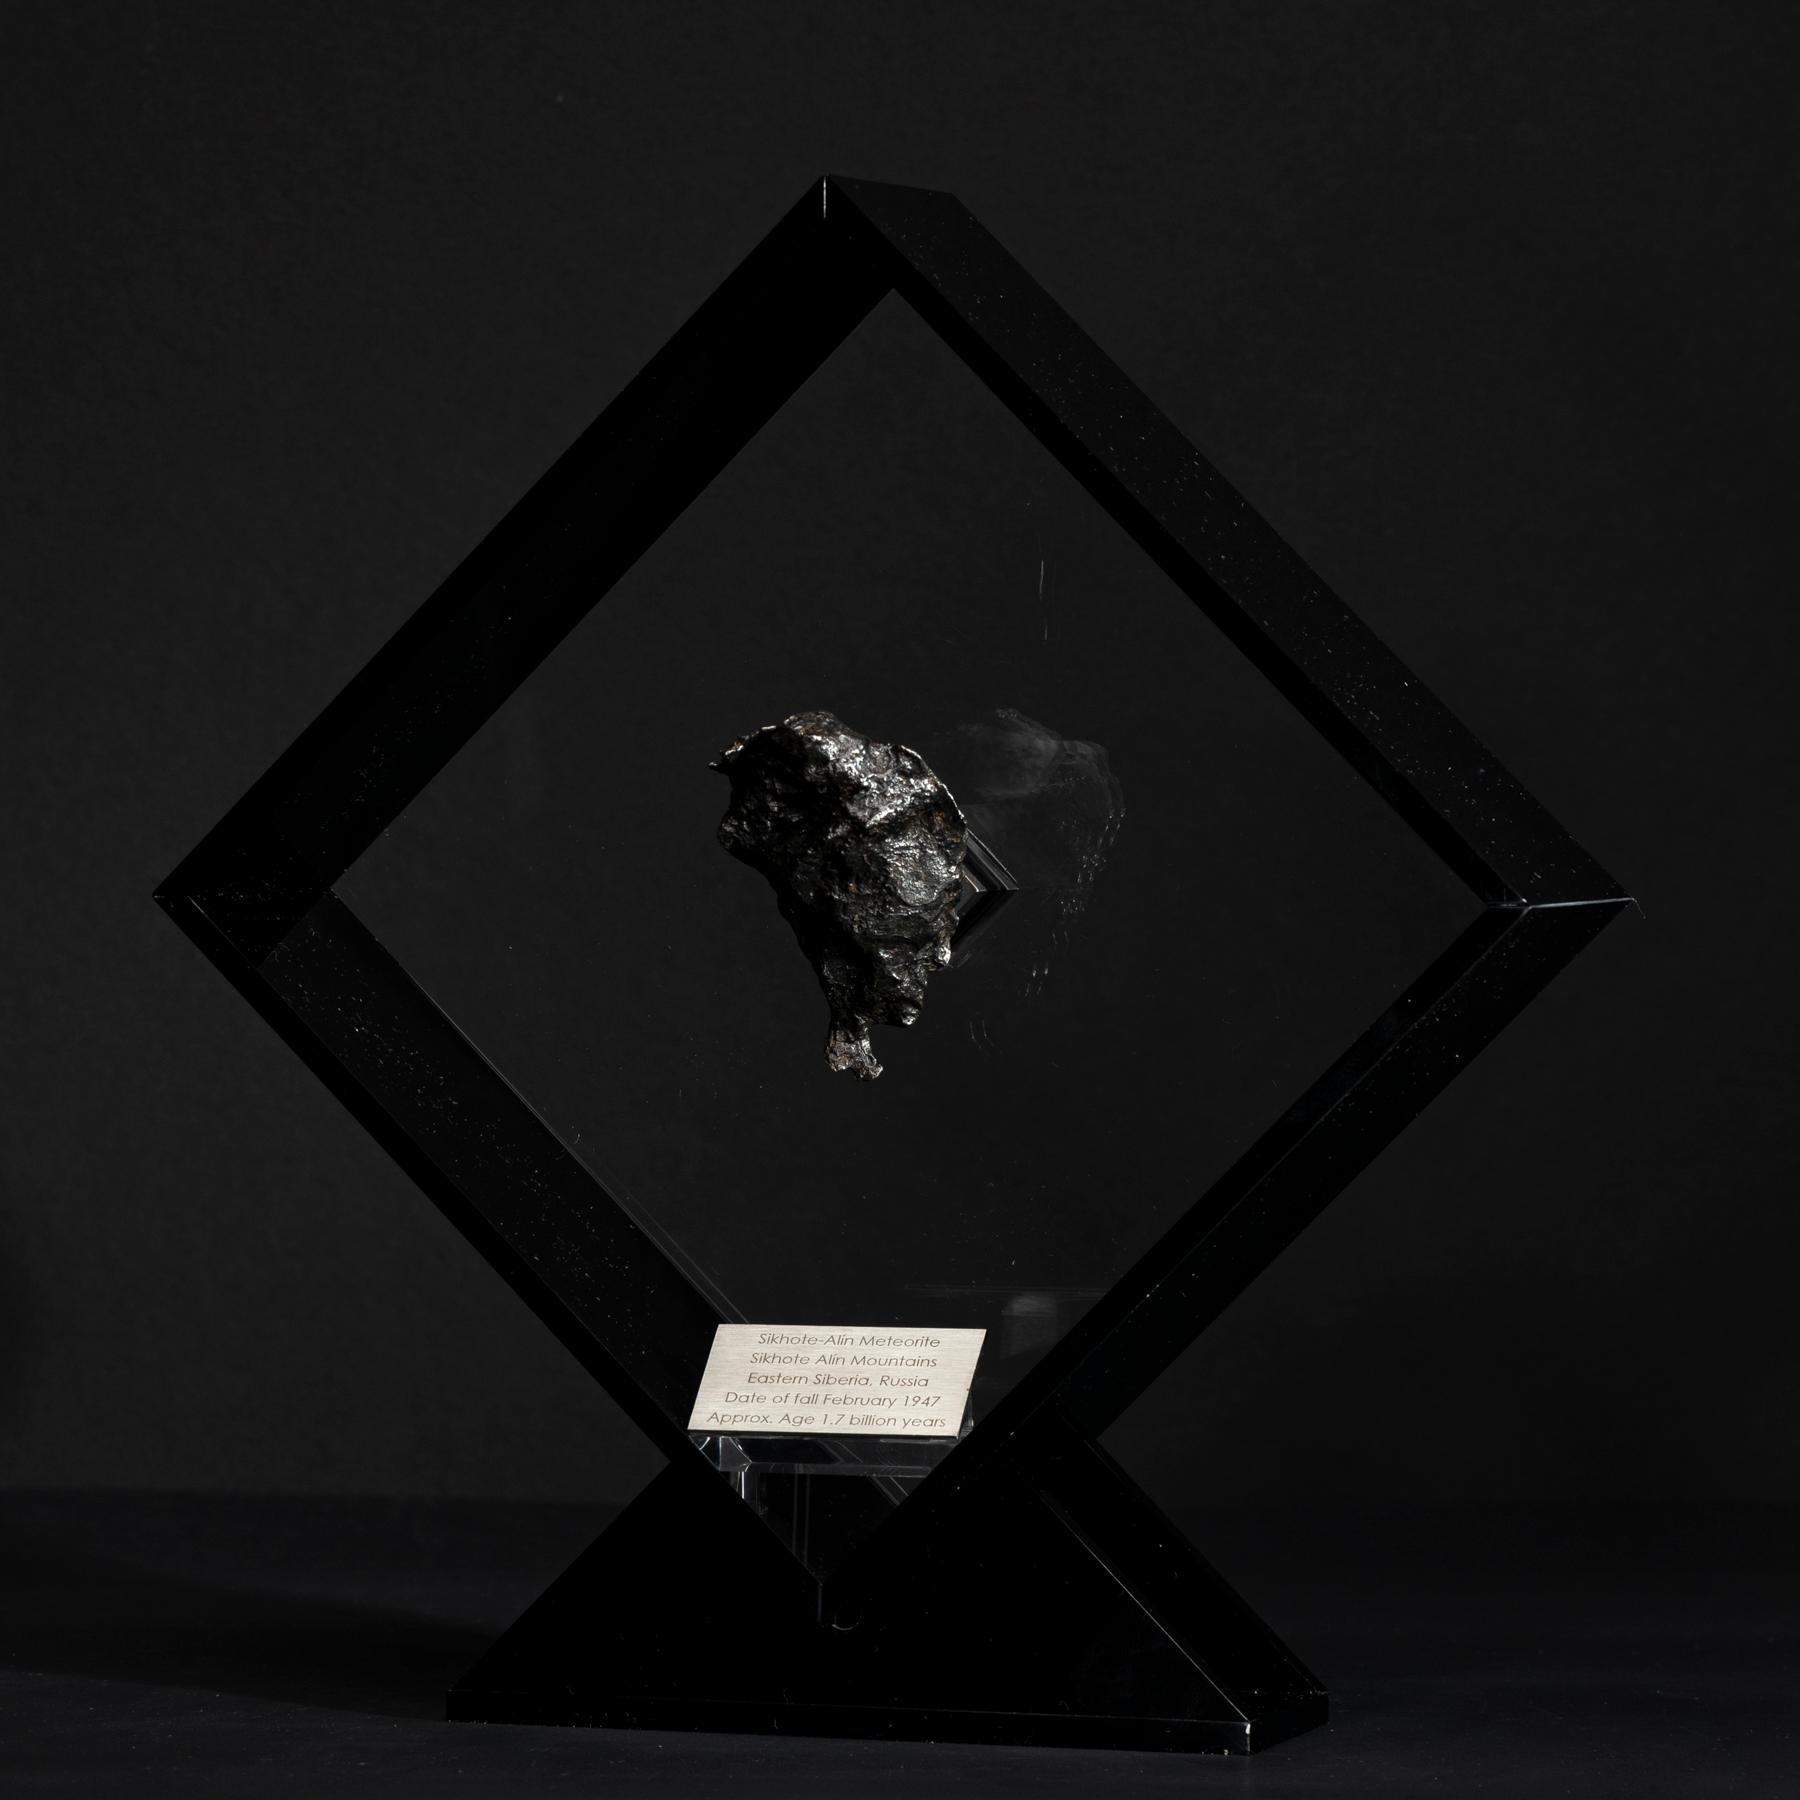 Design/One original dans un présentoir en acrylique avec un aimant donnant l'impression que la météorite flotte comme elle l'a fait dans l'espace pendant des années avant sa dernière visite sur Terre. 

Météorite de Sikhote Alin
Cette météorite en